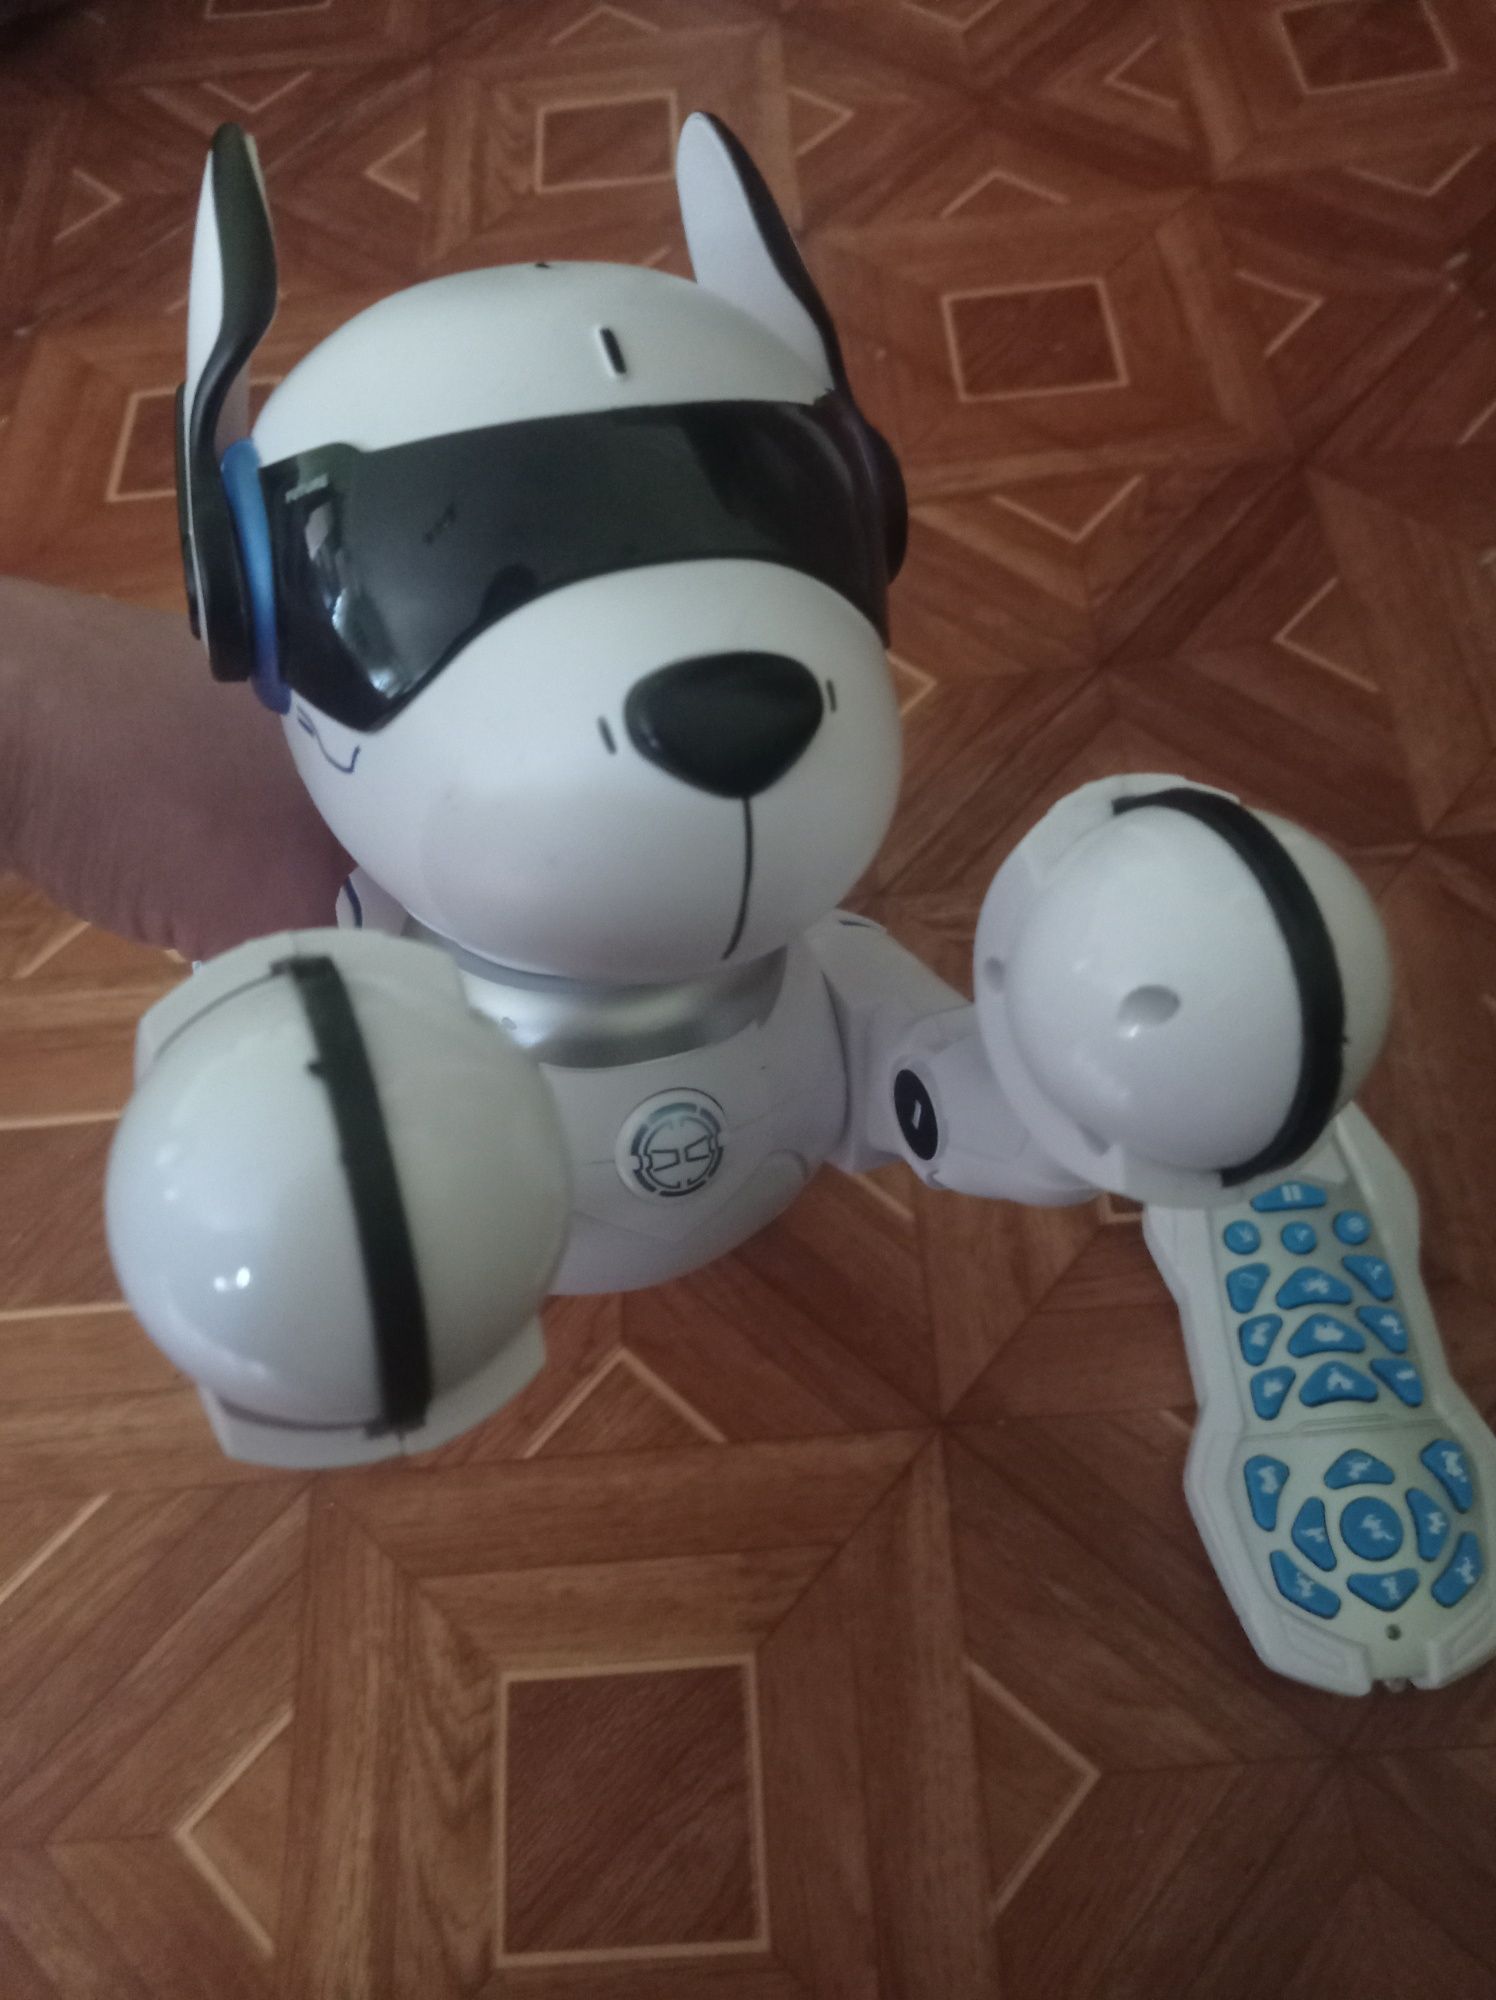 Крутой подарок малышу — робот собака на пульте управления